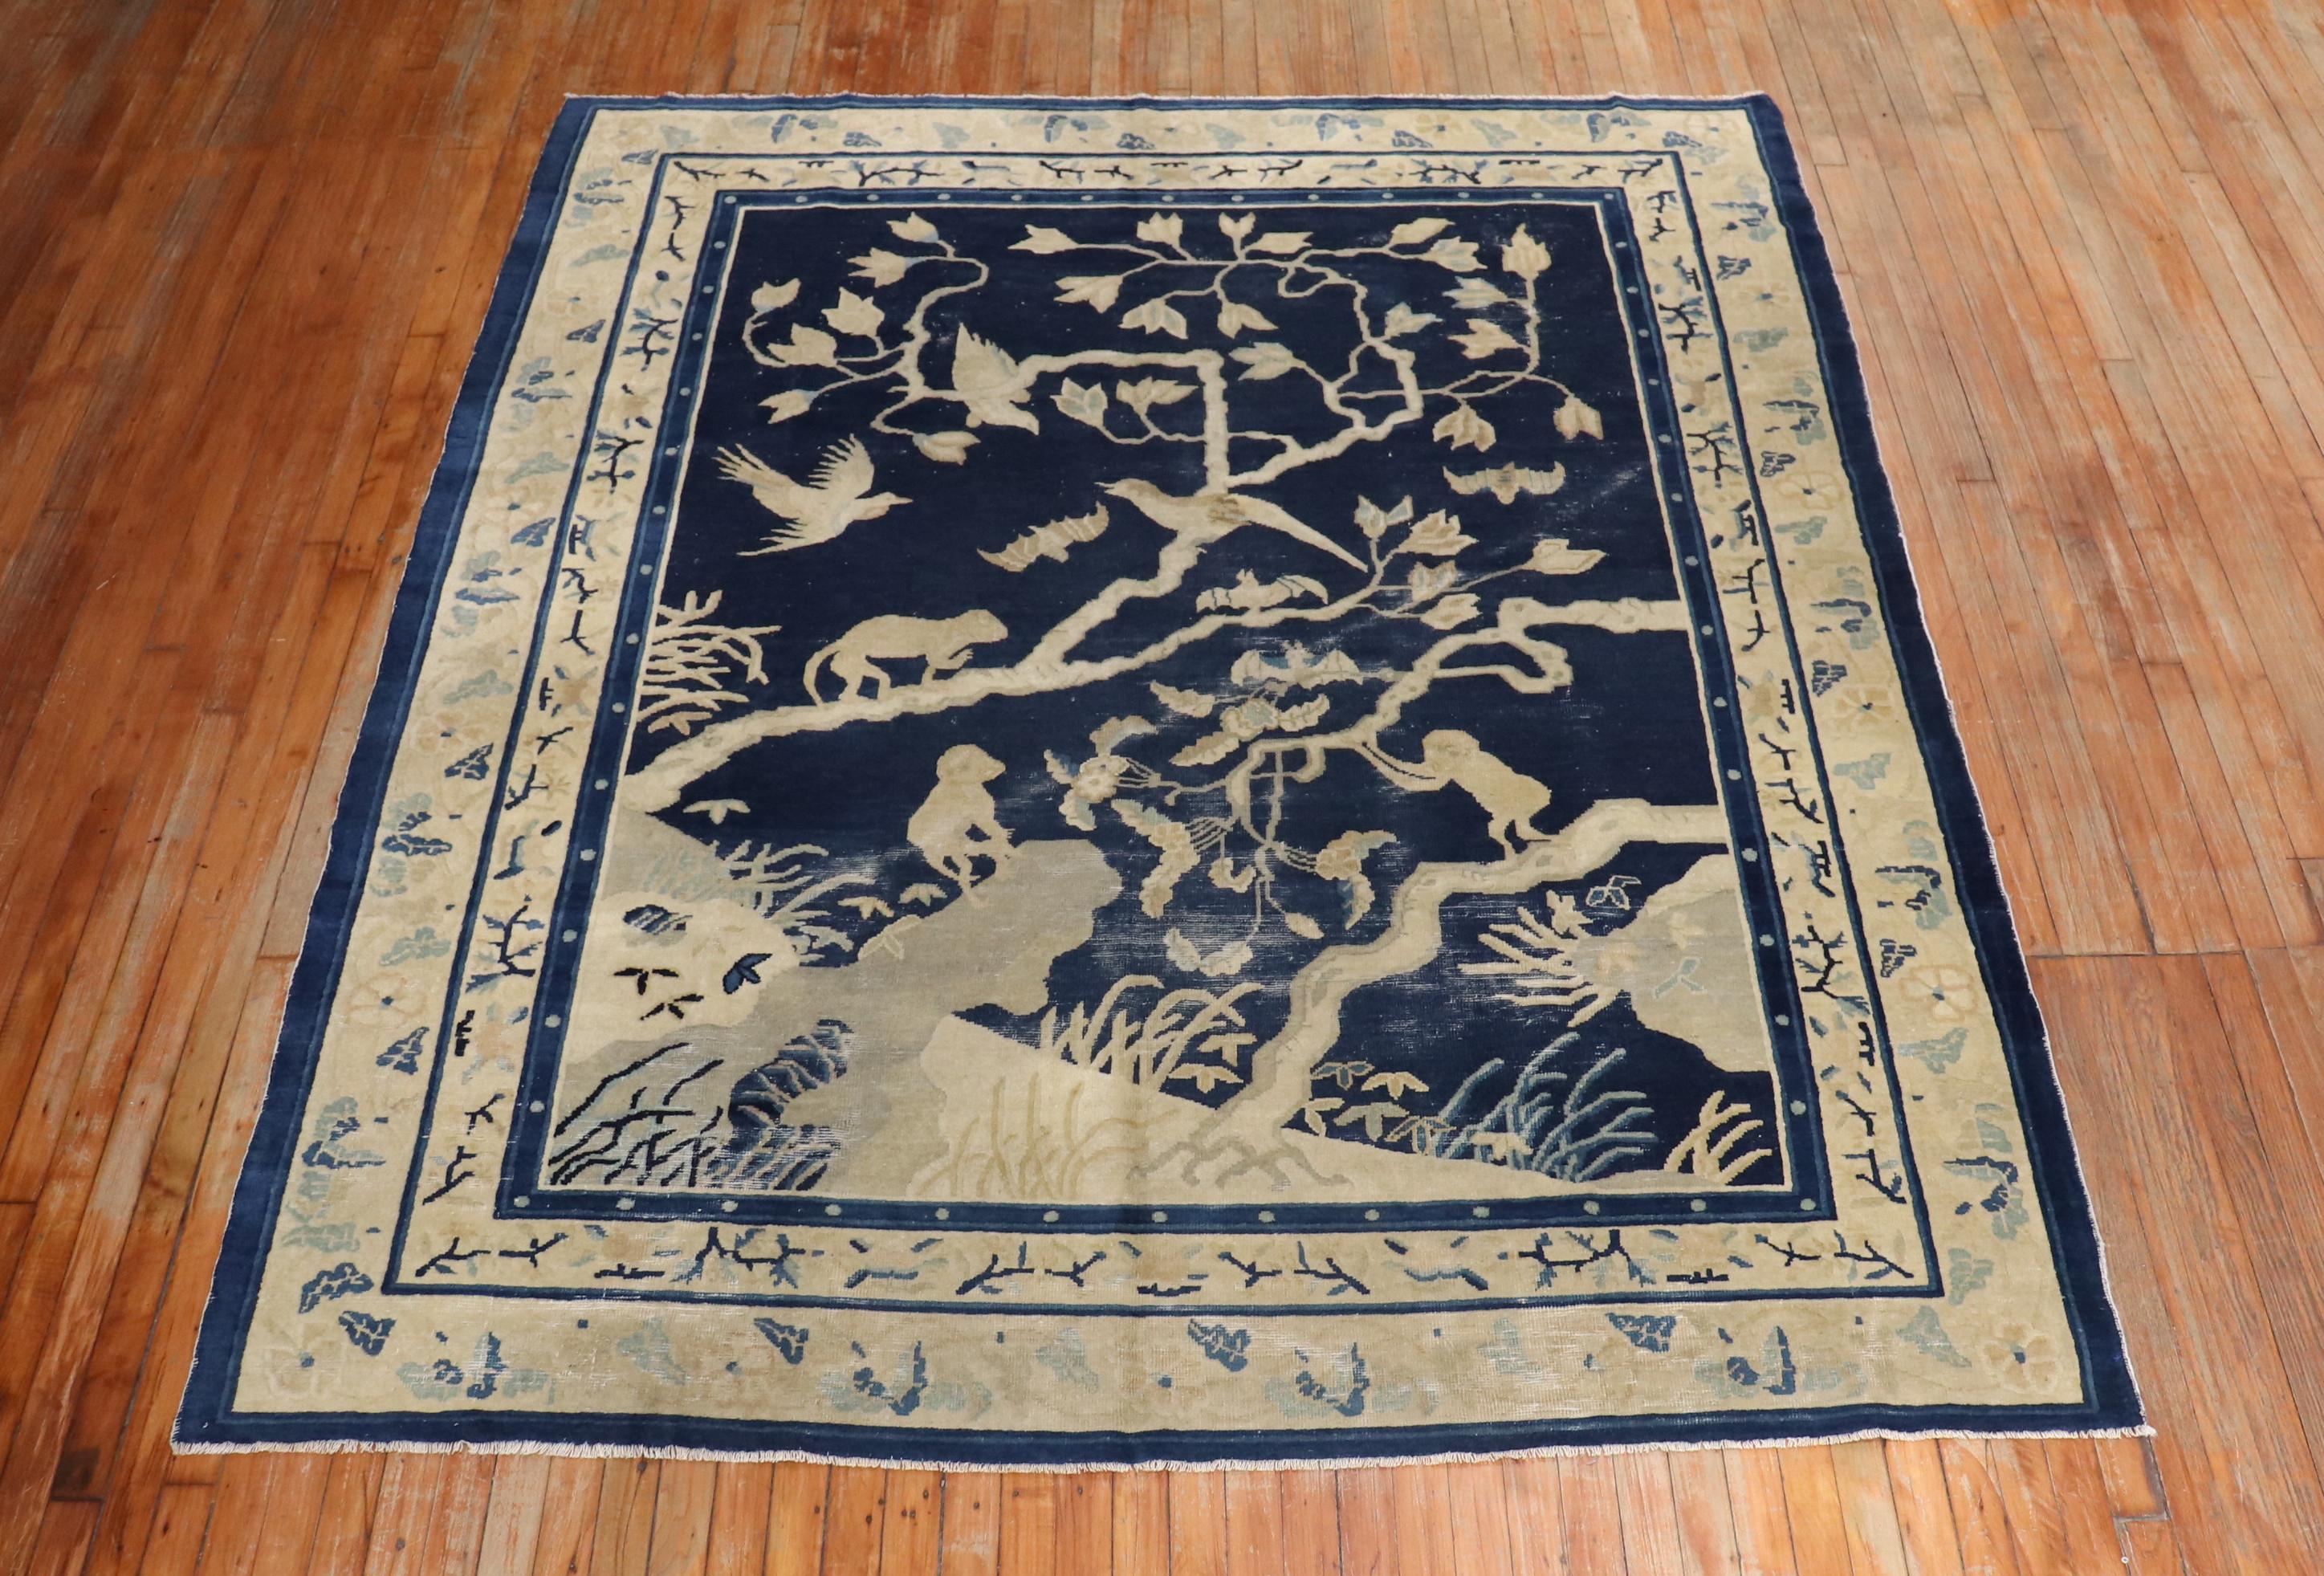 Ein chinesischer Teppich aus dem späten 19. Jahrhundert mit 3 Affen und einigen Vögeln in einer Landschaftsszene. Marinefarbenes Feld, beigefarbene Akzente. Einige altersbedingte Abnutzung

Maße: 7' x 8'6